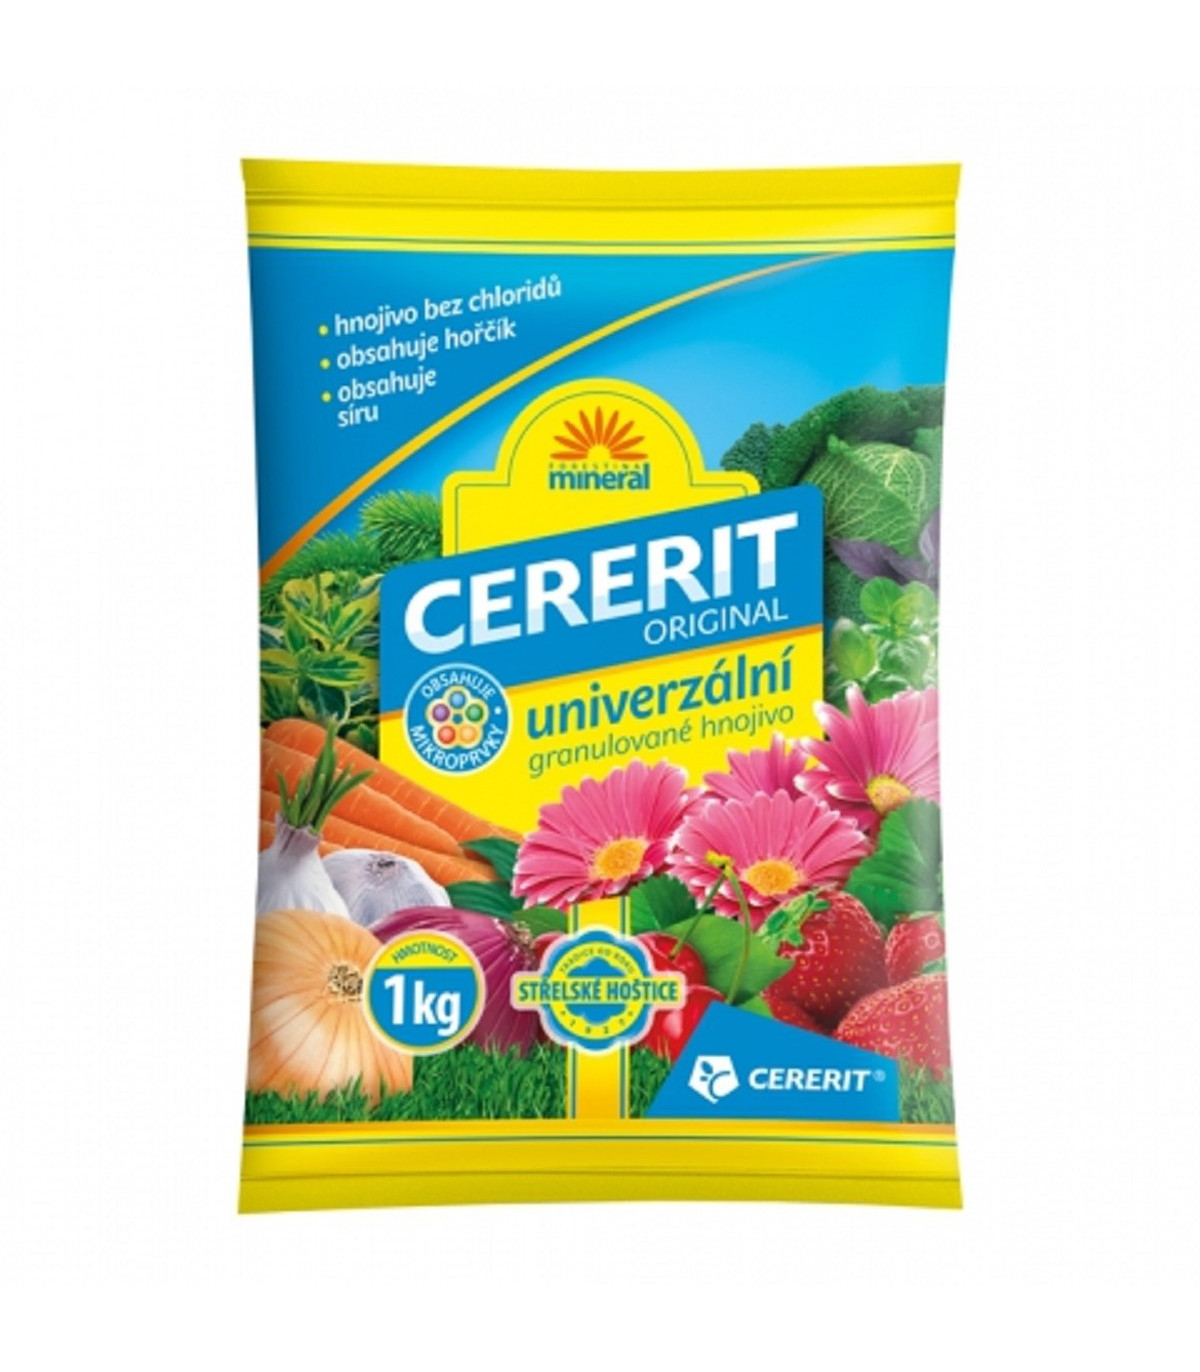 Cererit Mineral - Forestina - univerzální granulované hnojivo - 1 kg